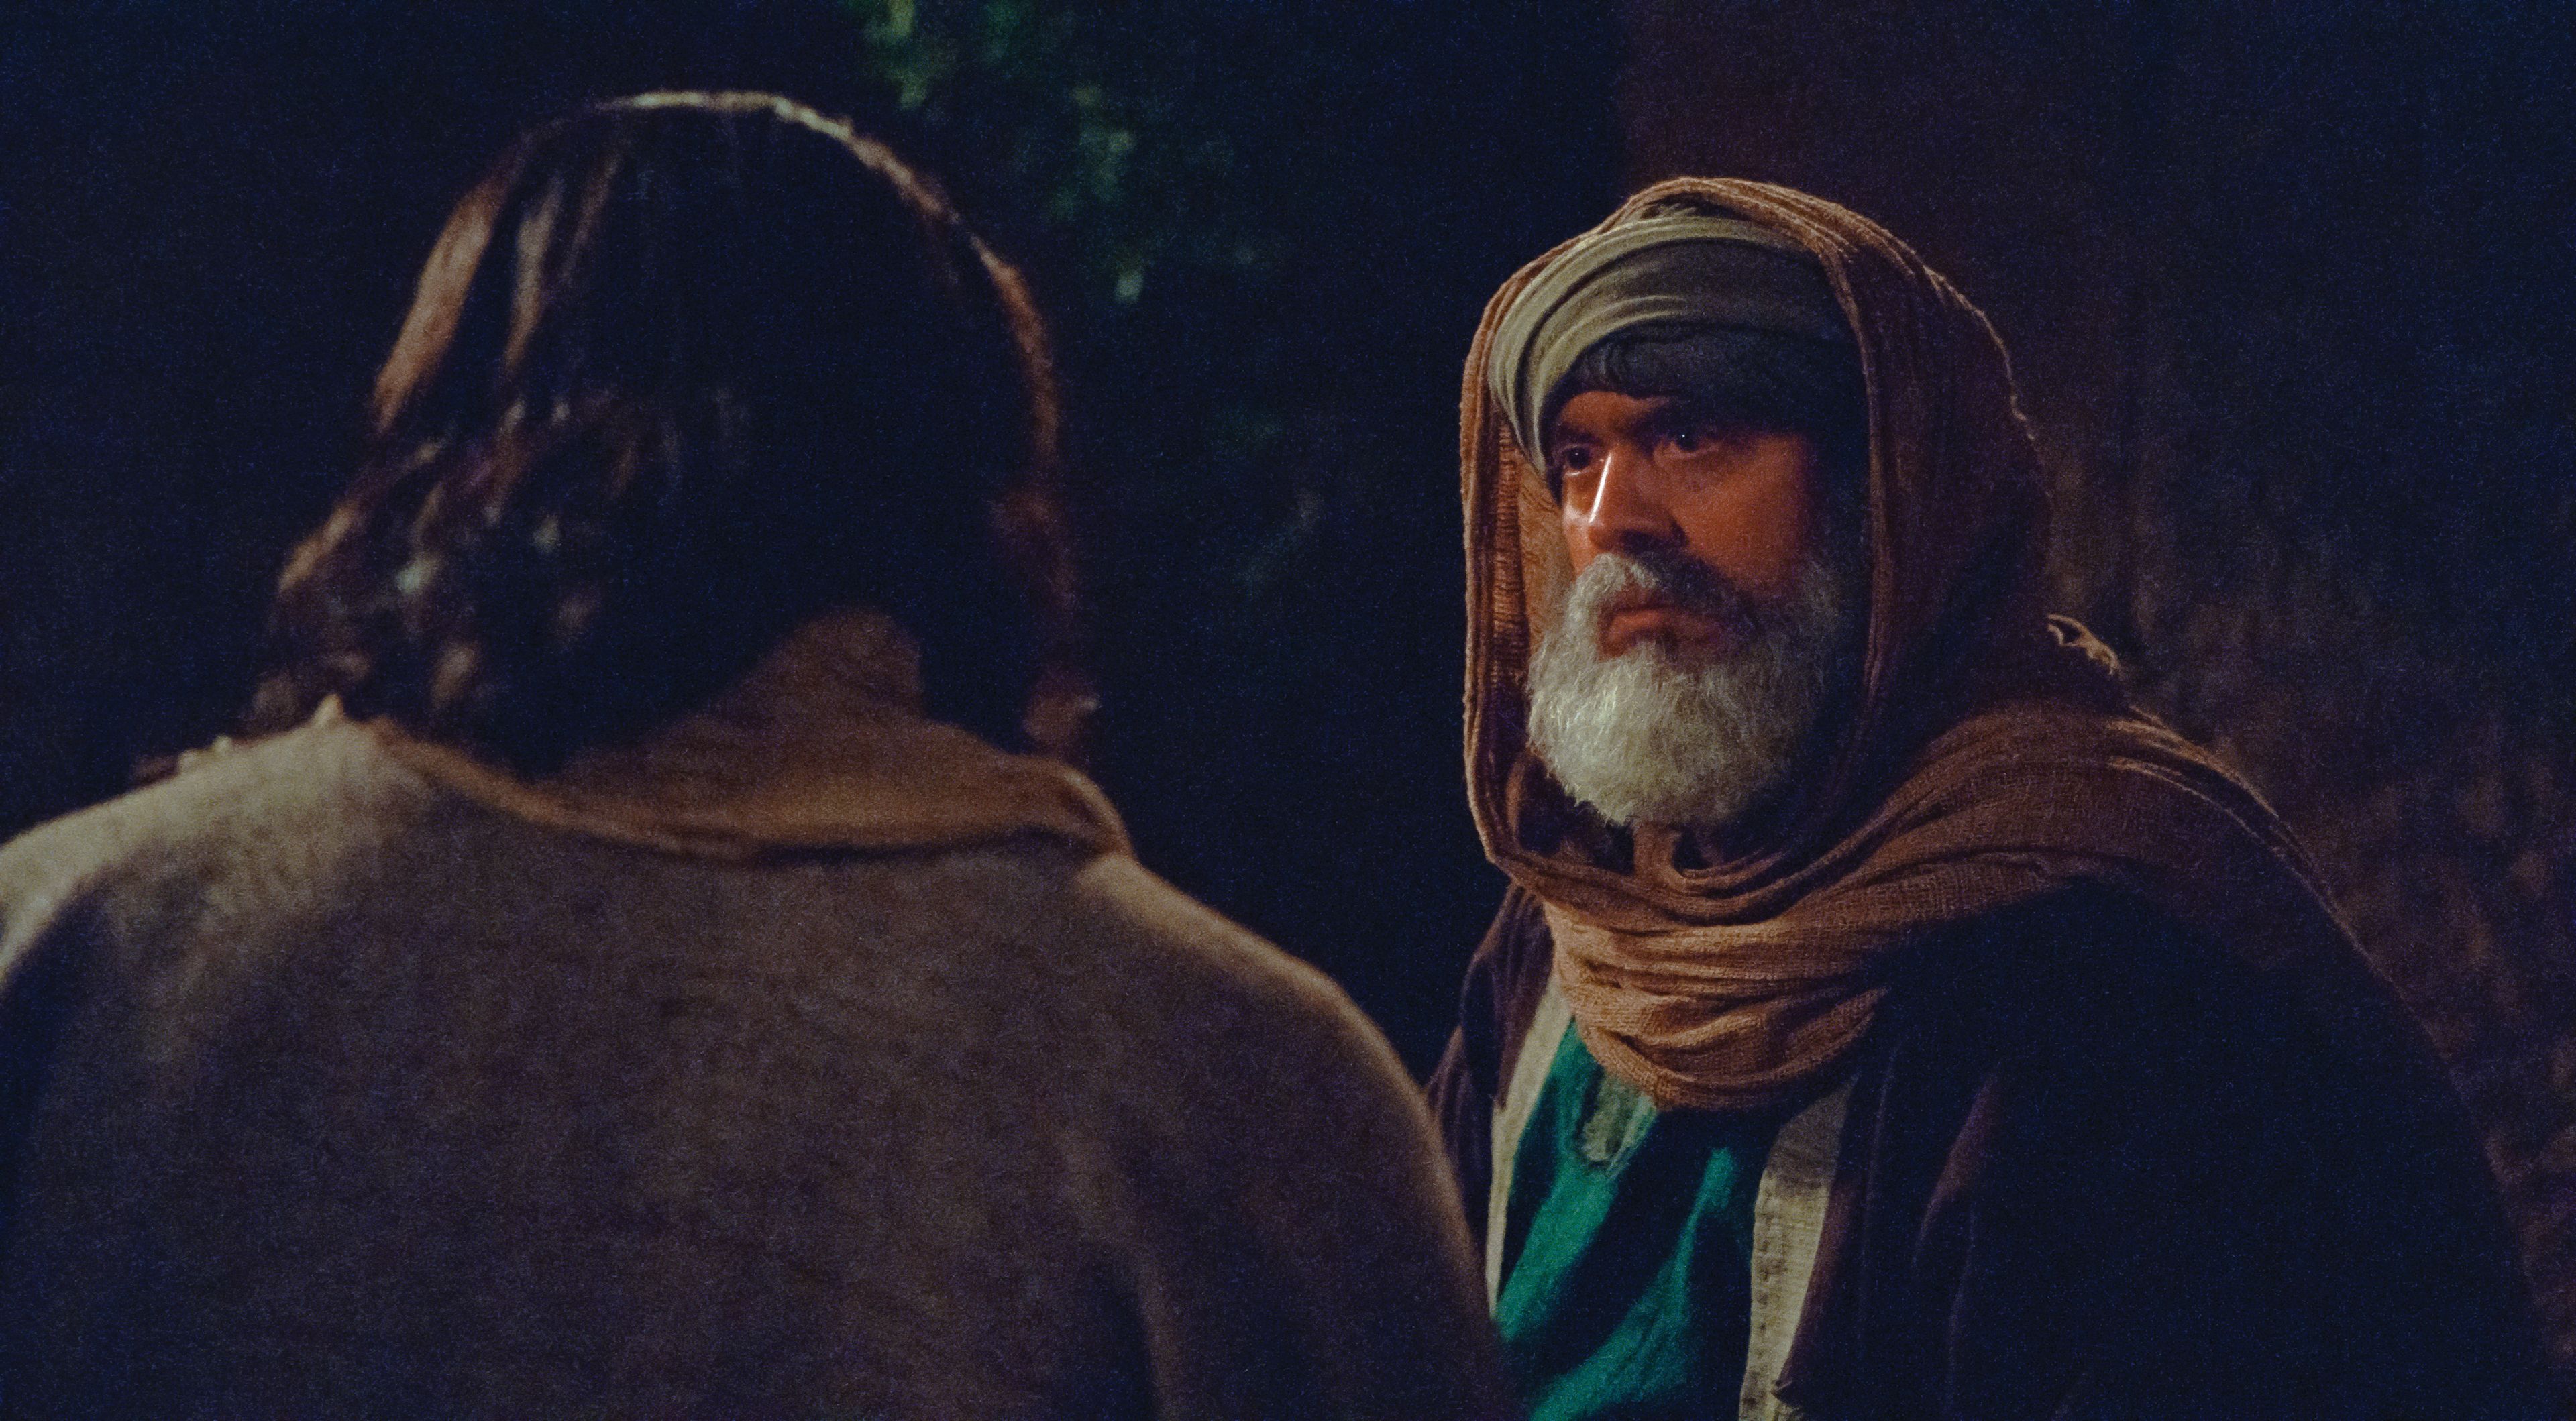 Nicodemus listens to Jesus as He teaches him.